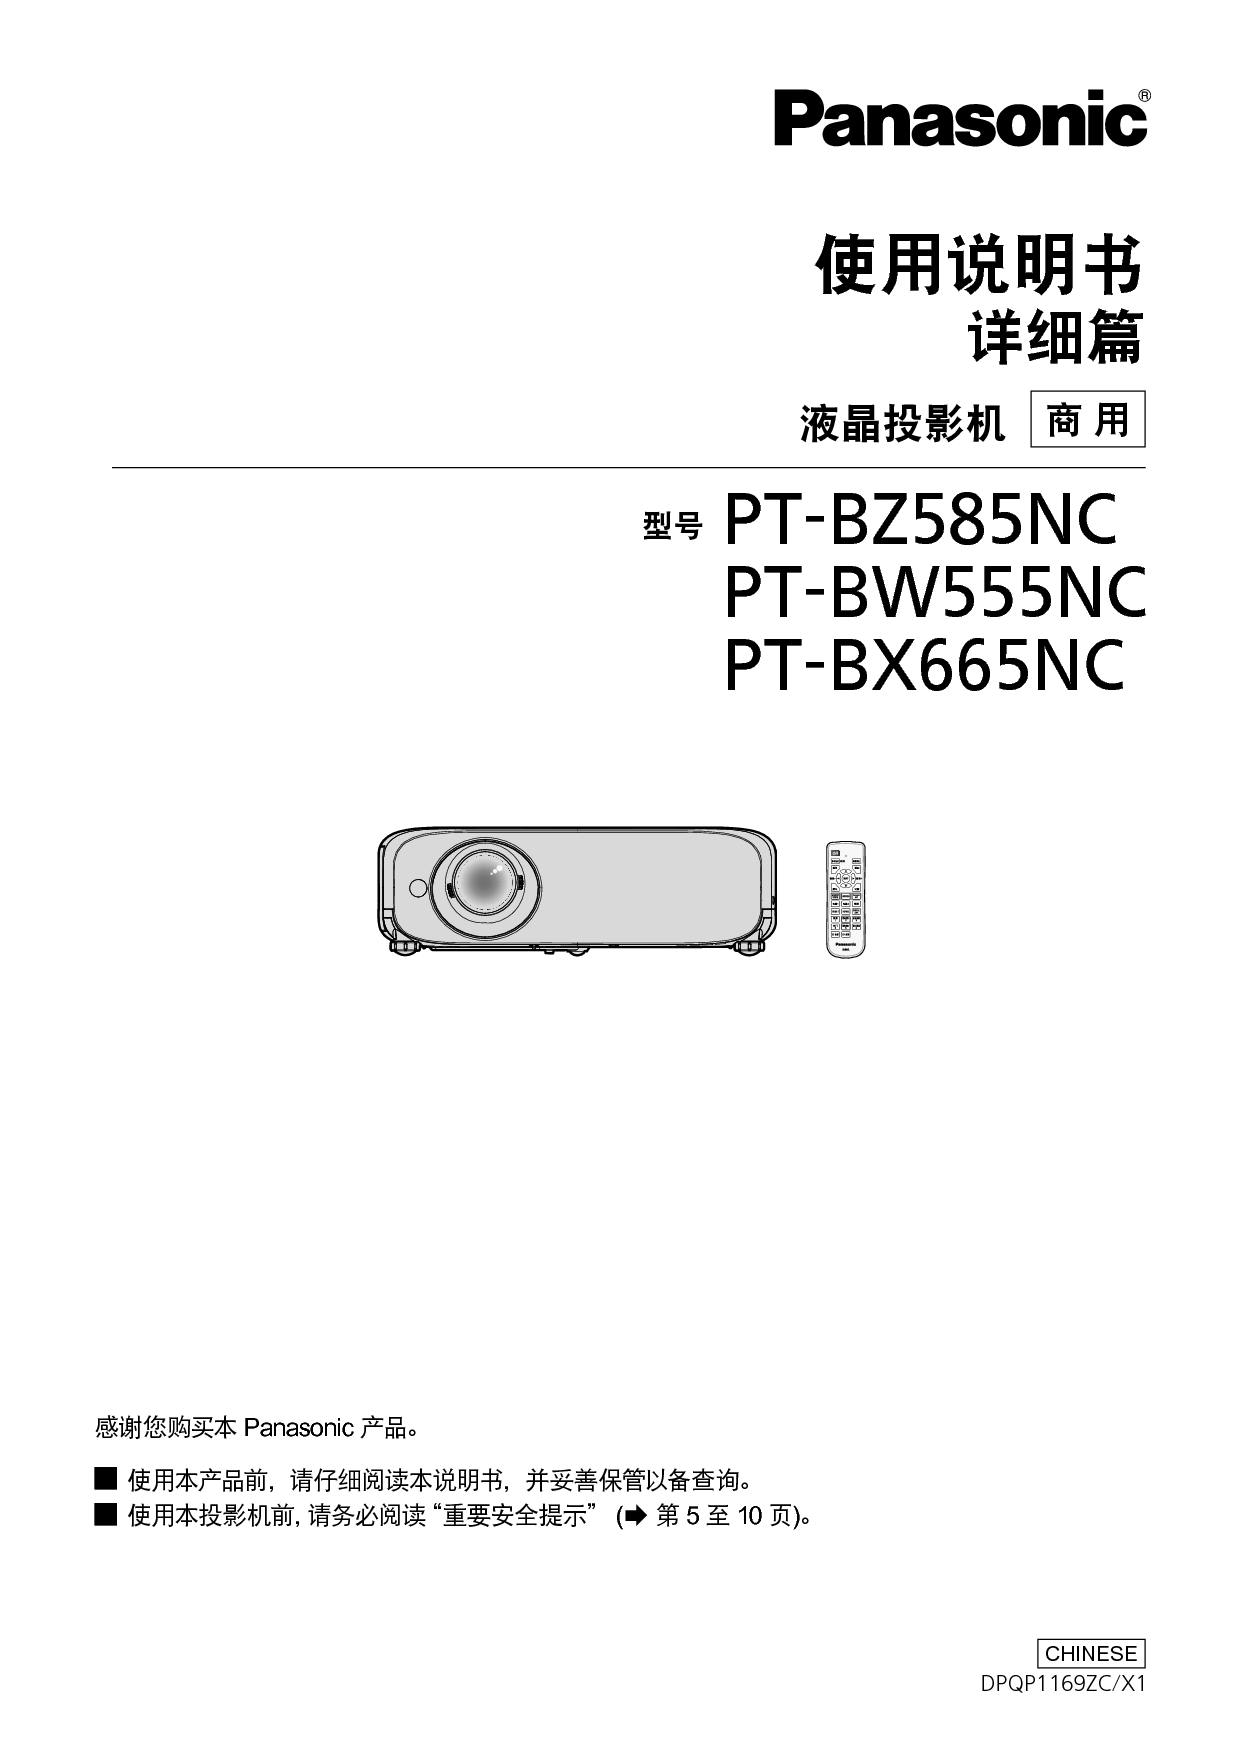 松下 Panasonic PT-BW555NC 使用说明书 封面